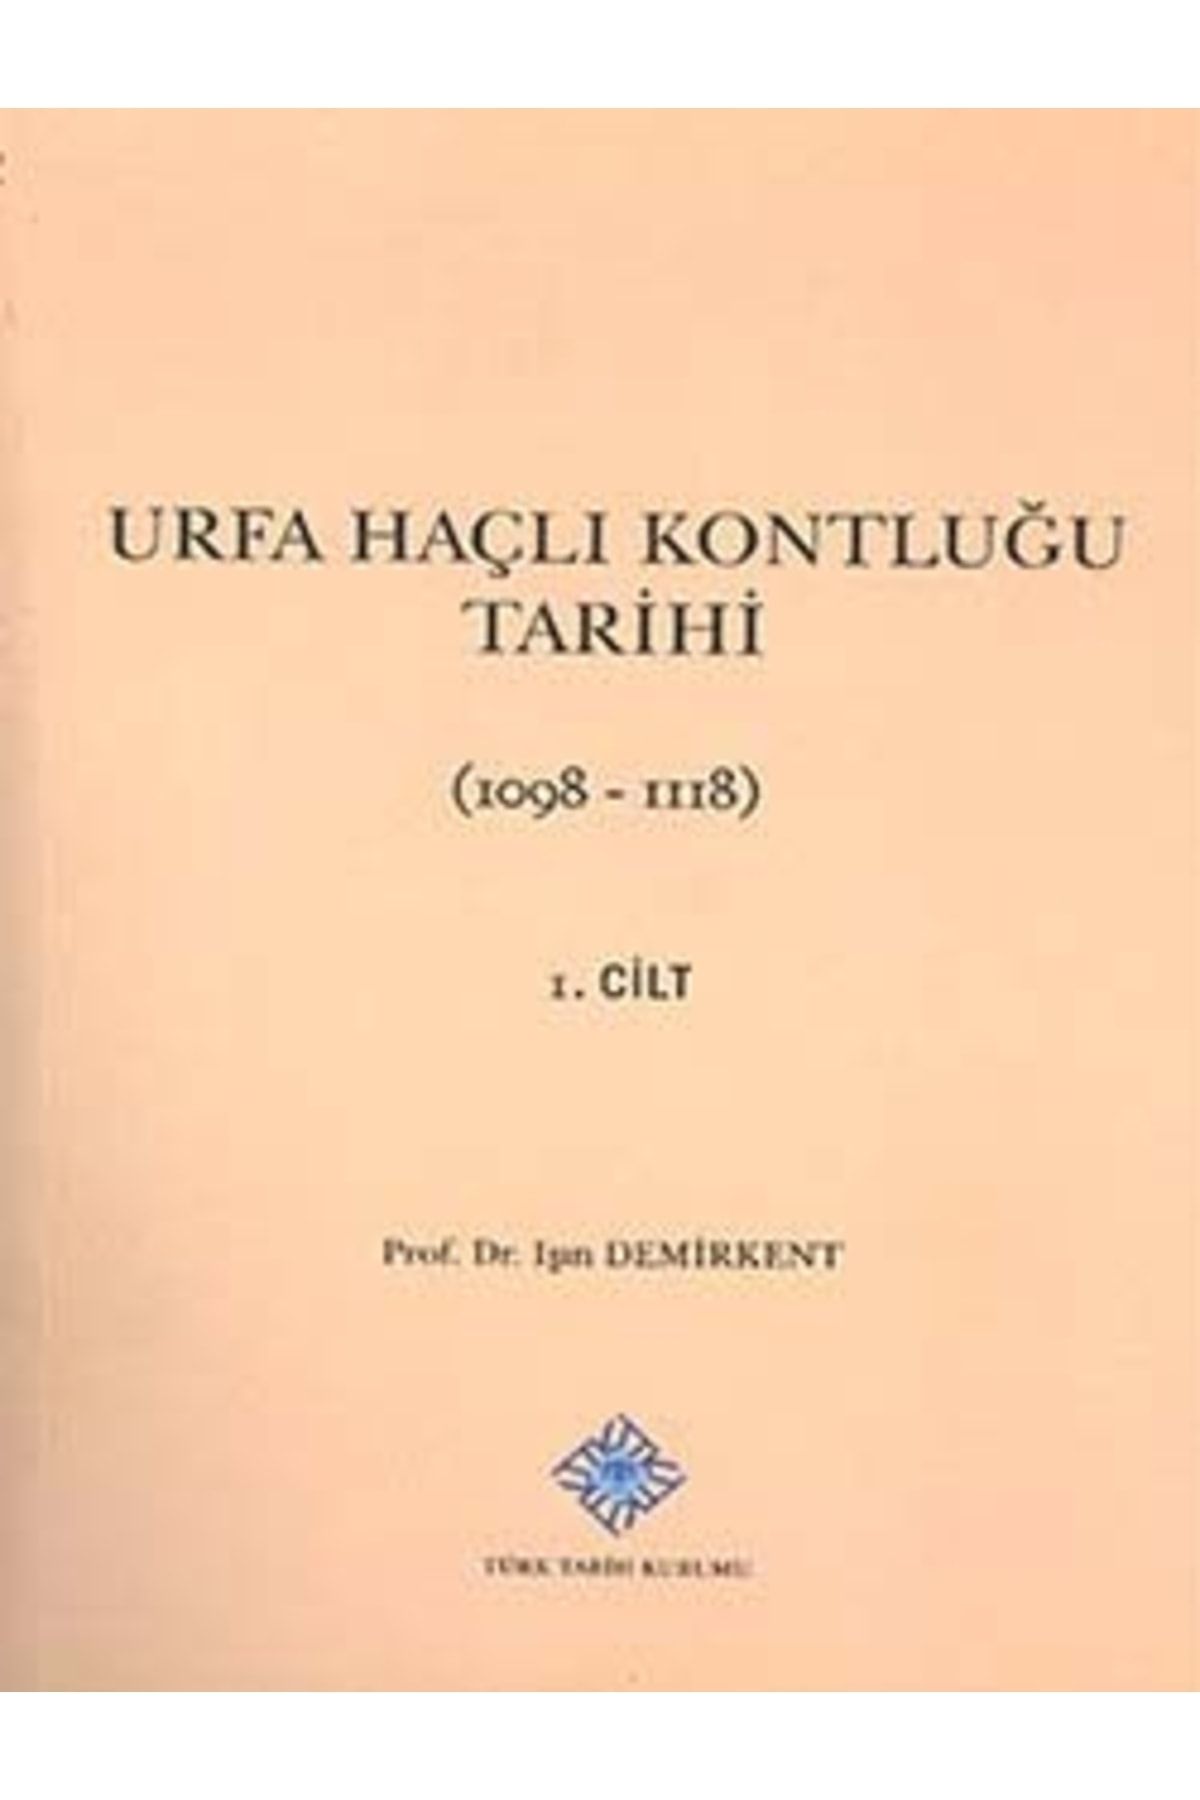 Türk Tarih Kurumu Yayınları Urfa Haçlı Kontluğu Tarihi (1098-1118) - I, 2013